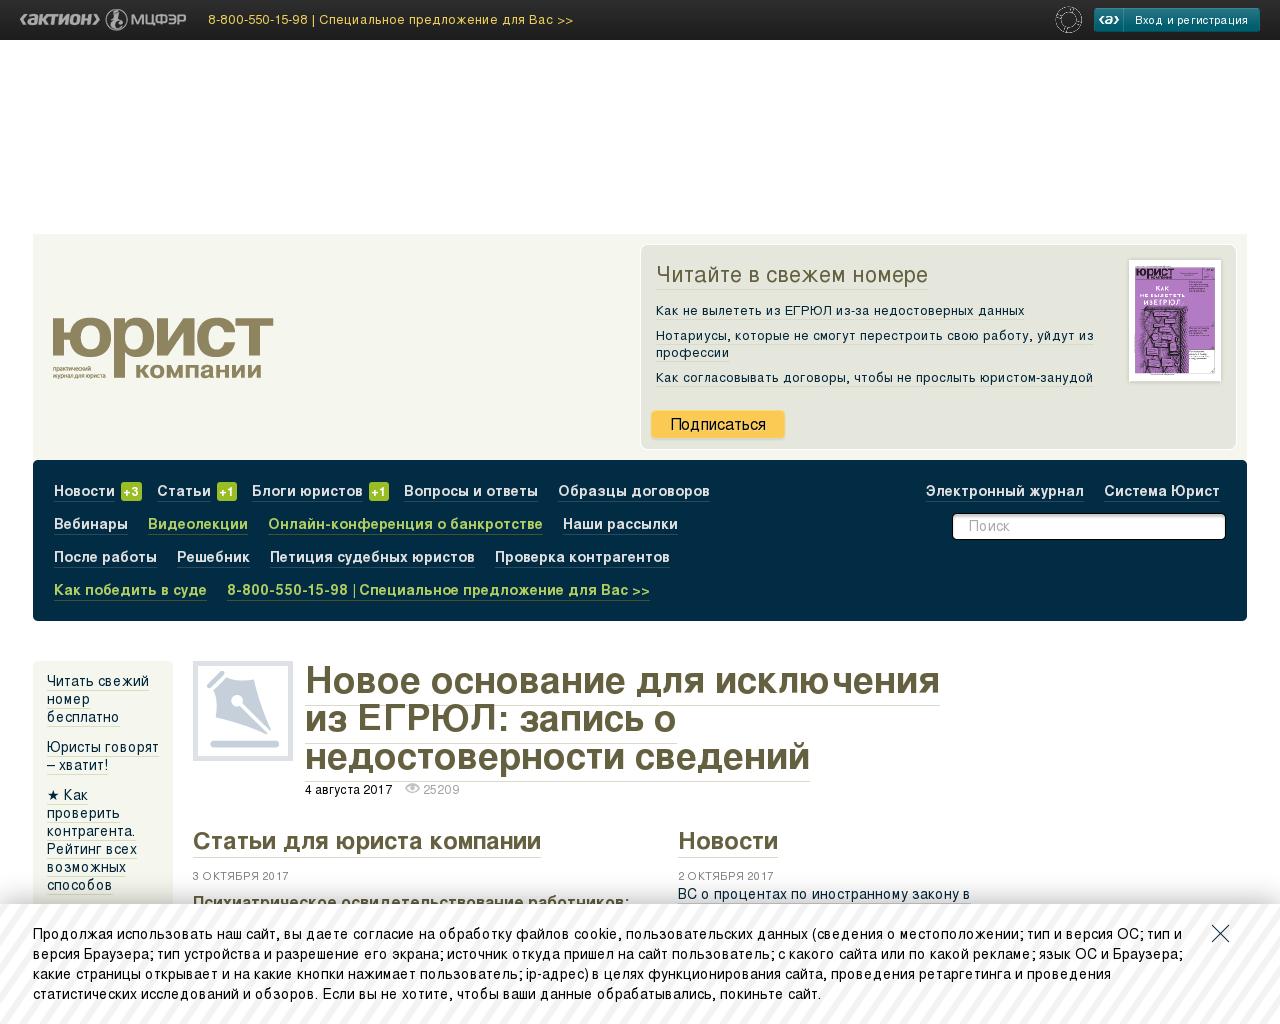 Изображение сайта law.ru в разрешении 1280x1024